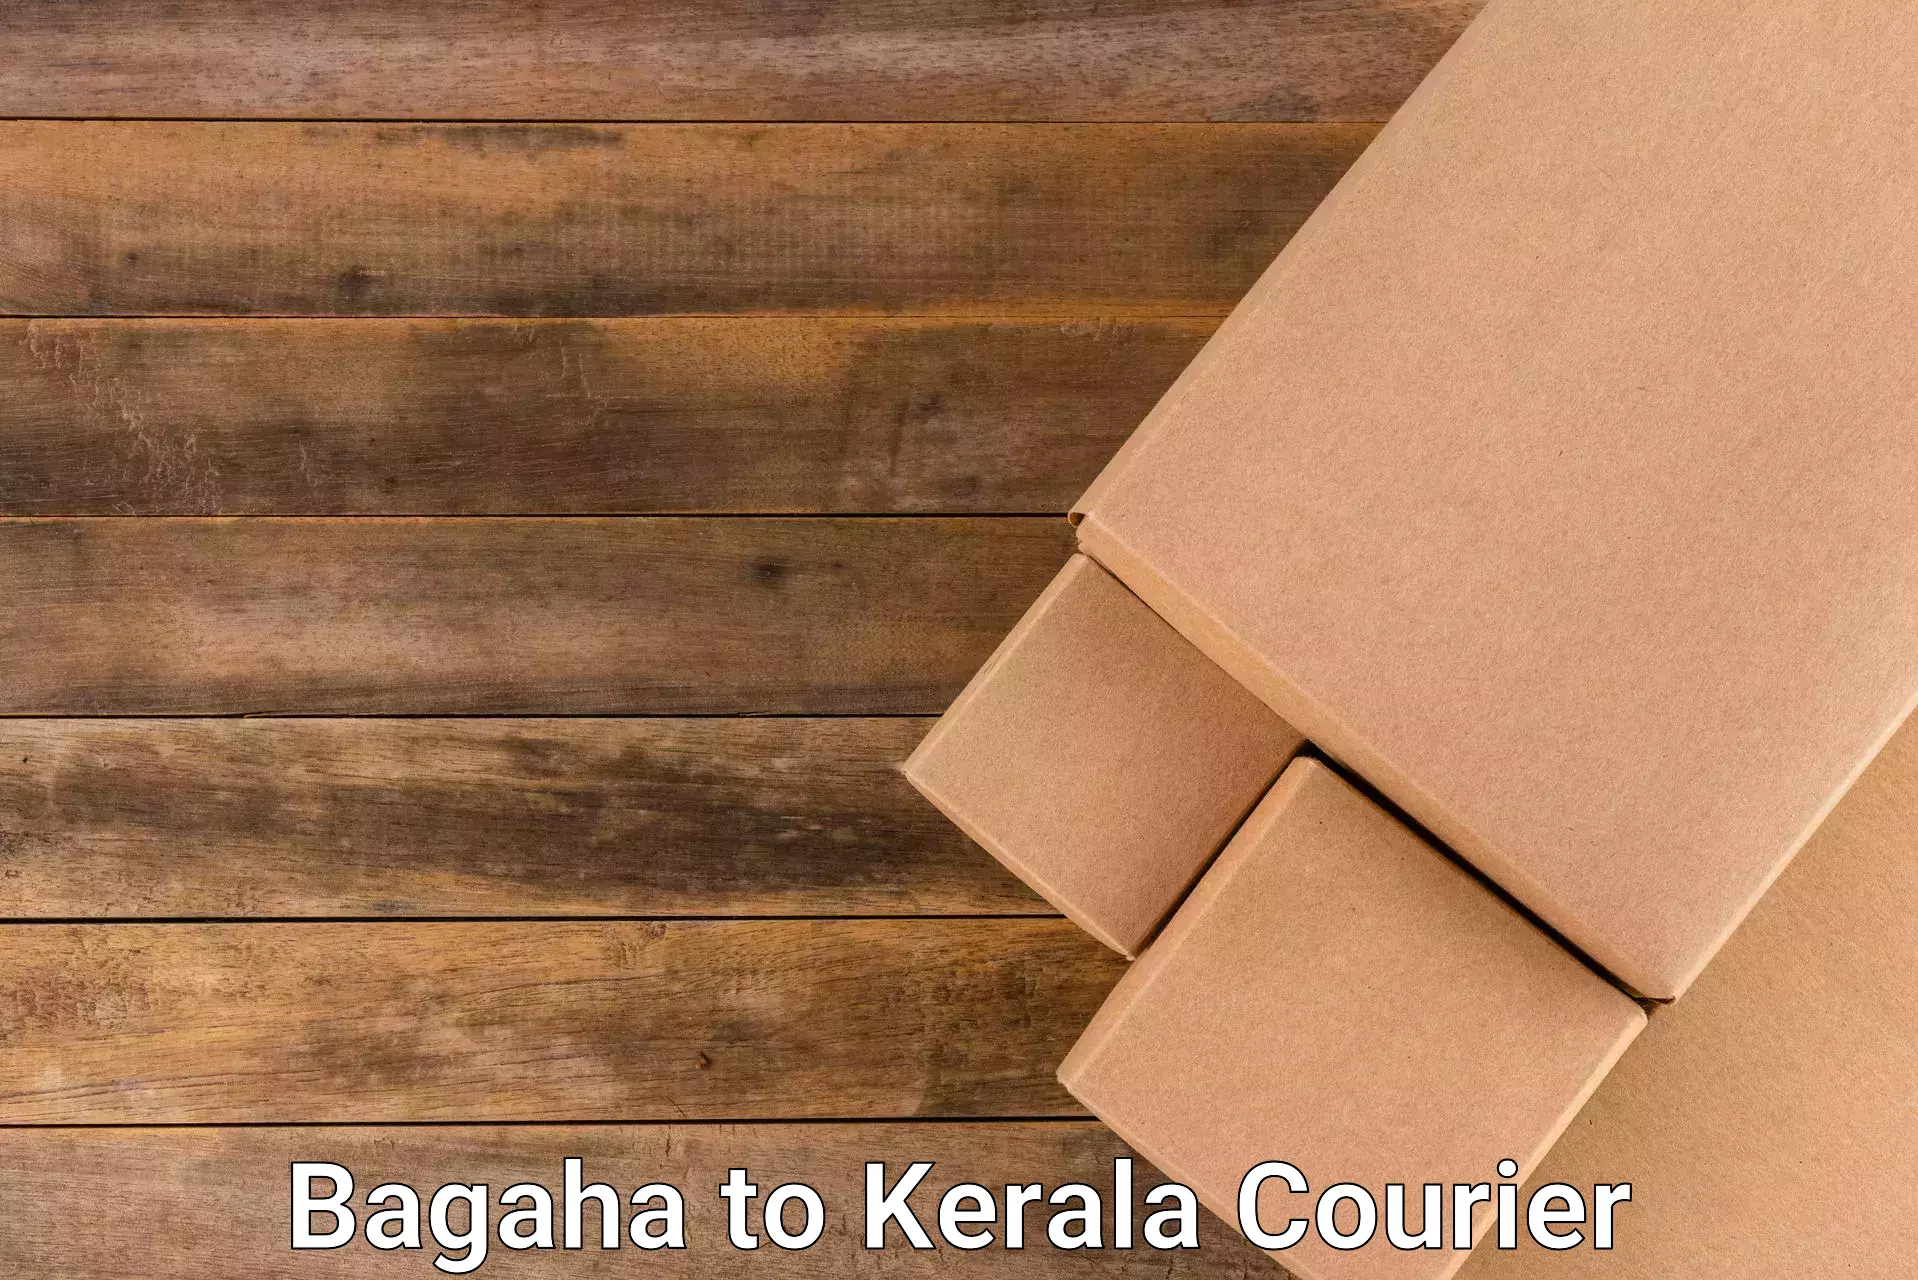 Courier service comparison Bagaha to Thachanattukara